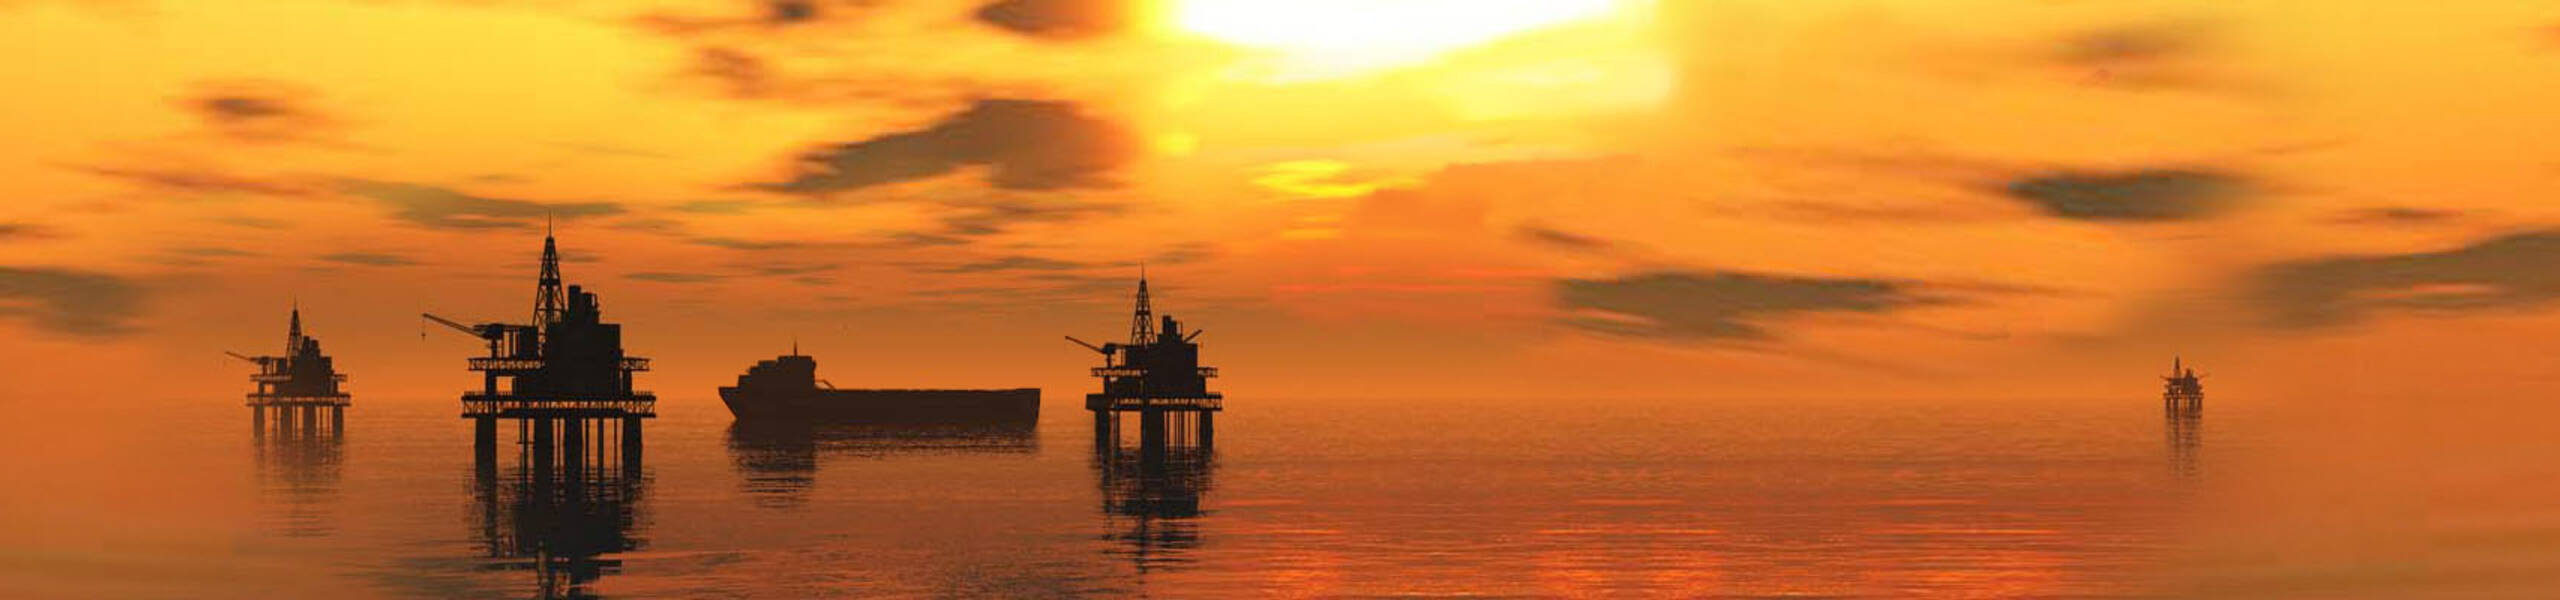 EIA: estoques de petróleo dos EUA em 4,9 milhões de barris